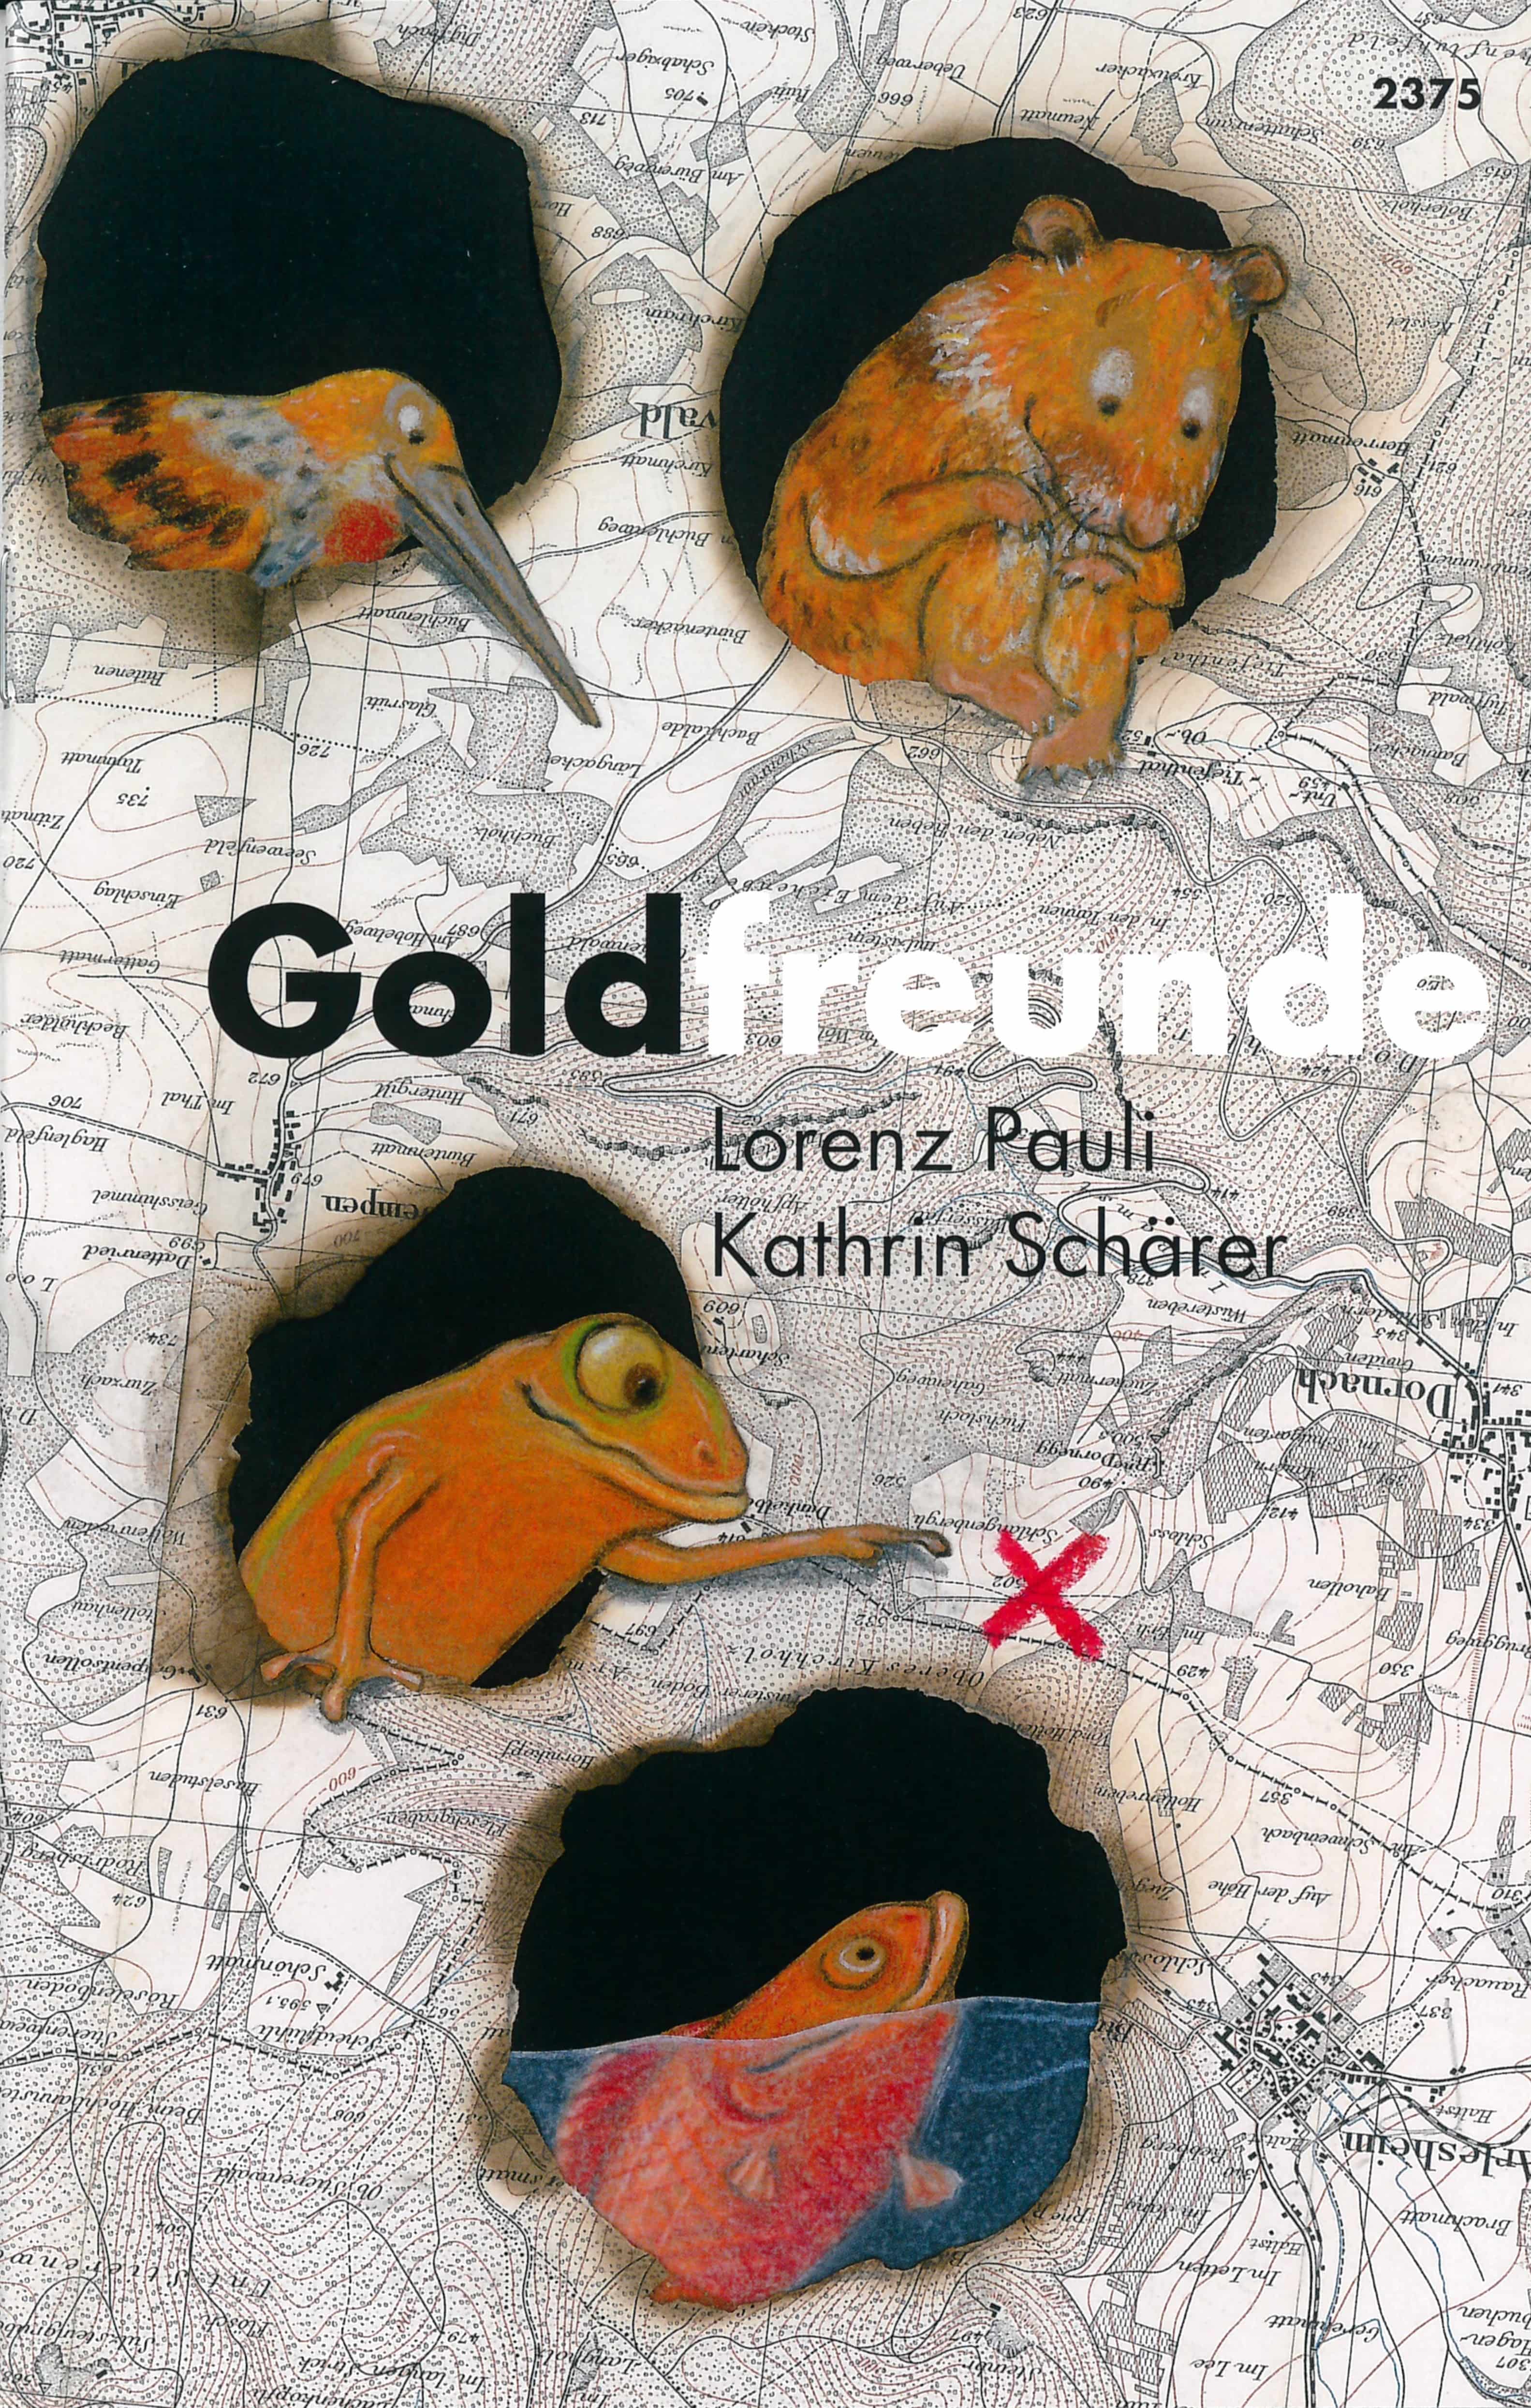 Goldfreunde, ein Kinderbuch von Lorenz Pauli, Illustration von Kathrin Schaerer, SJW Verlag, Freundschaft